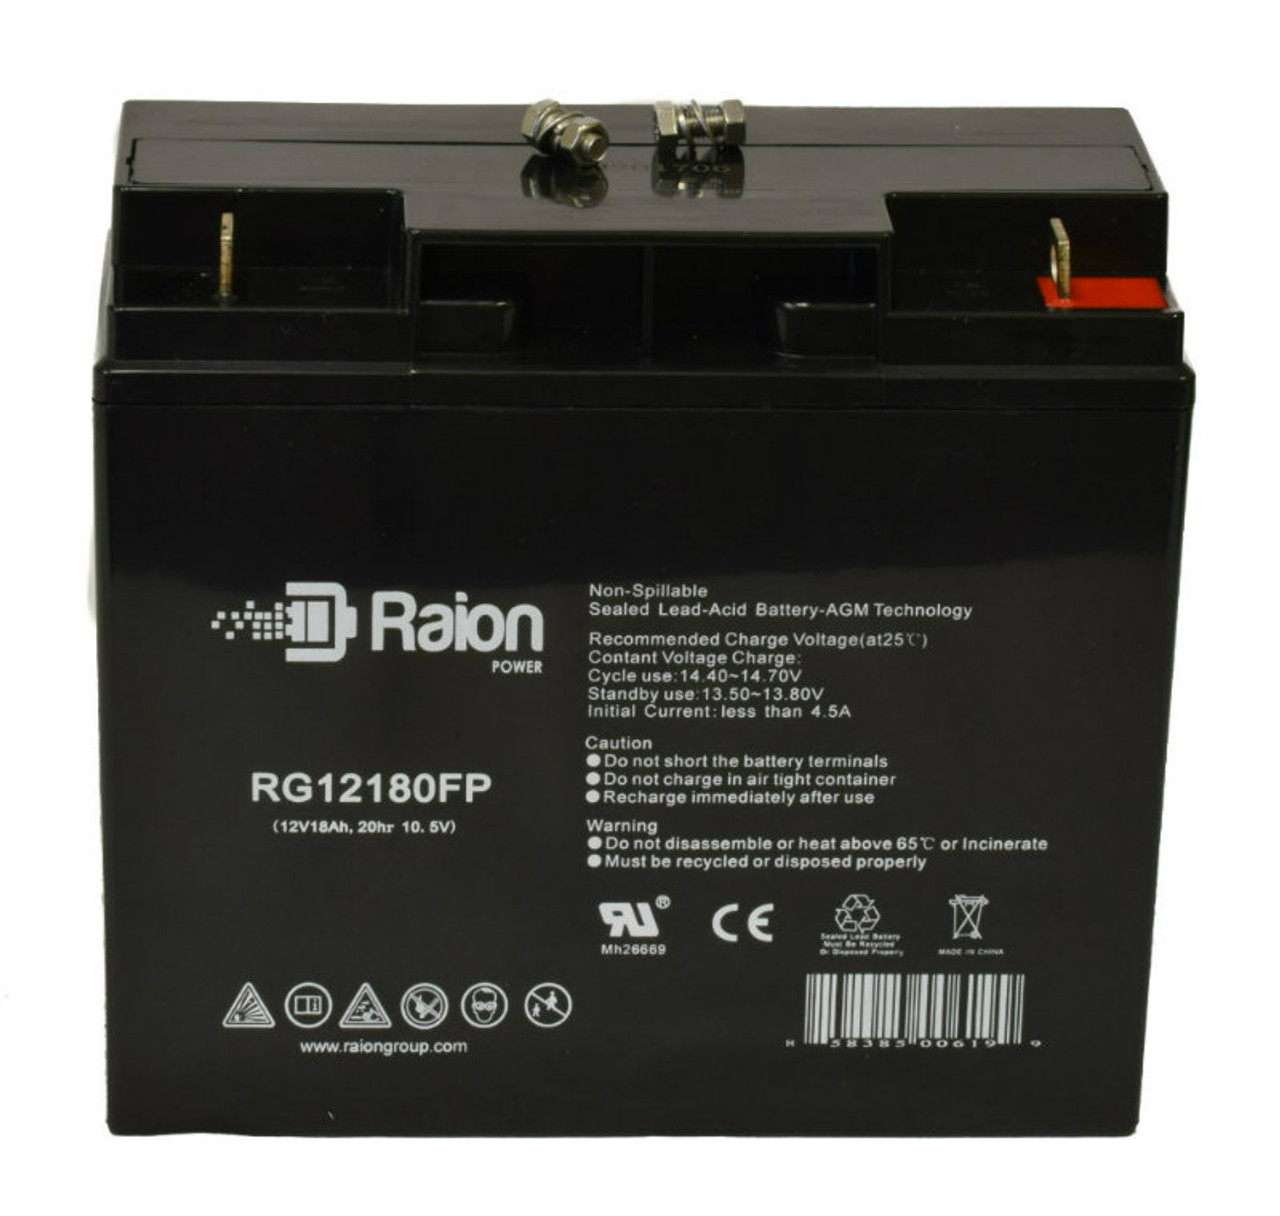 Raion Power RG12180FP 12V 18Ah Lead Acid Battery for Neuton Power NP1218